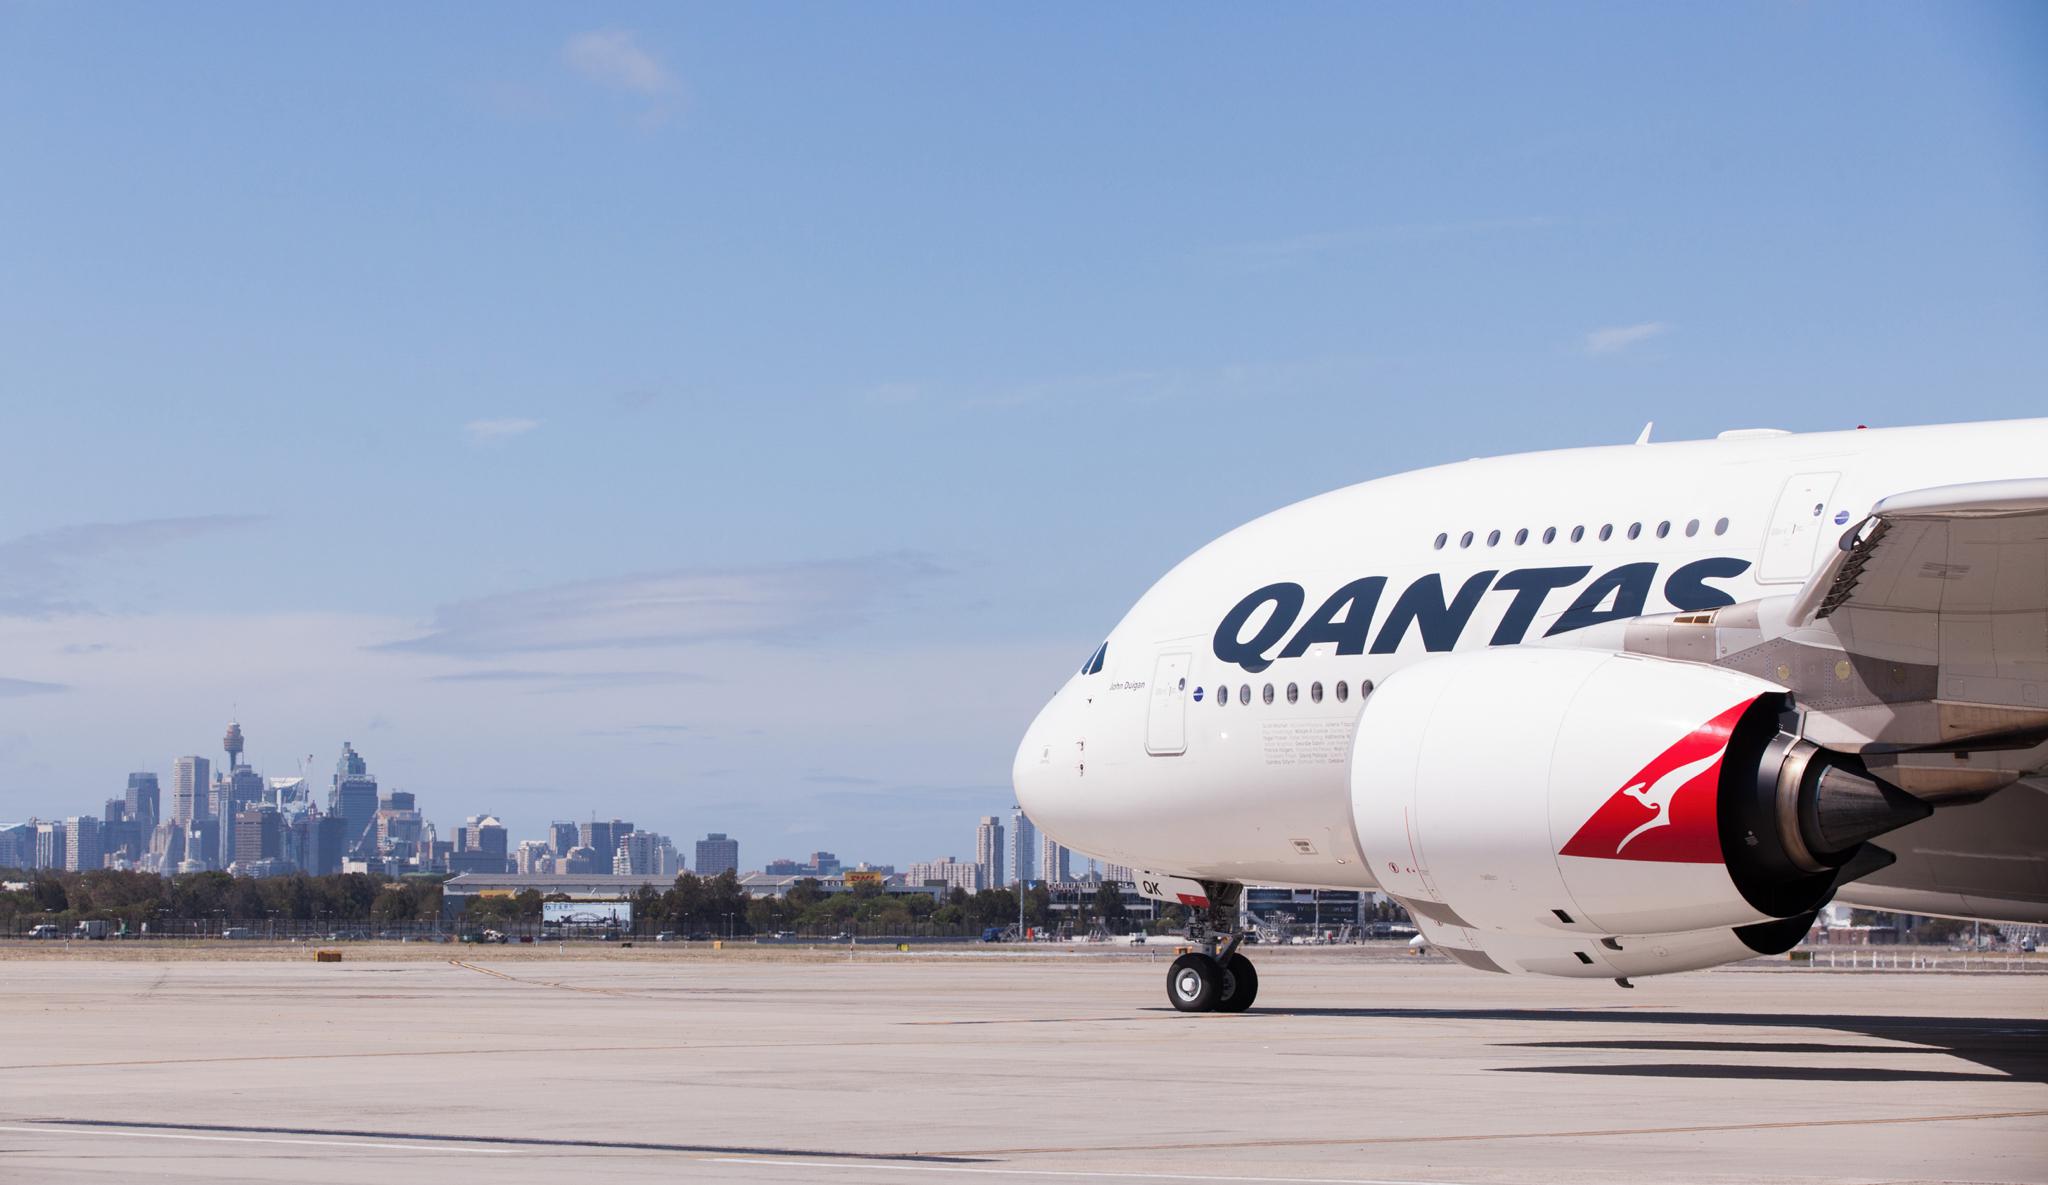 Qantas airplane